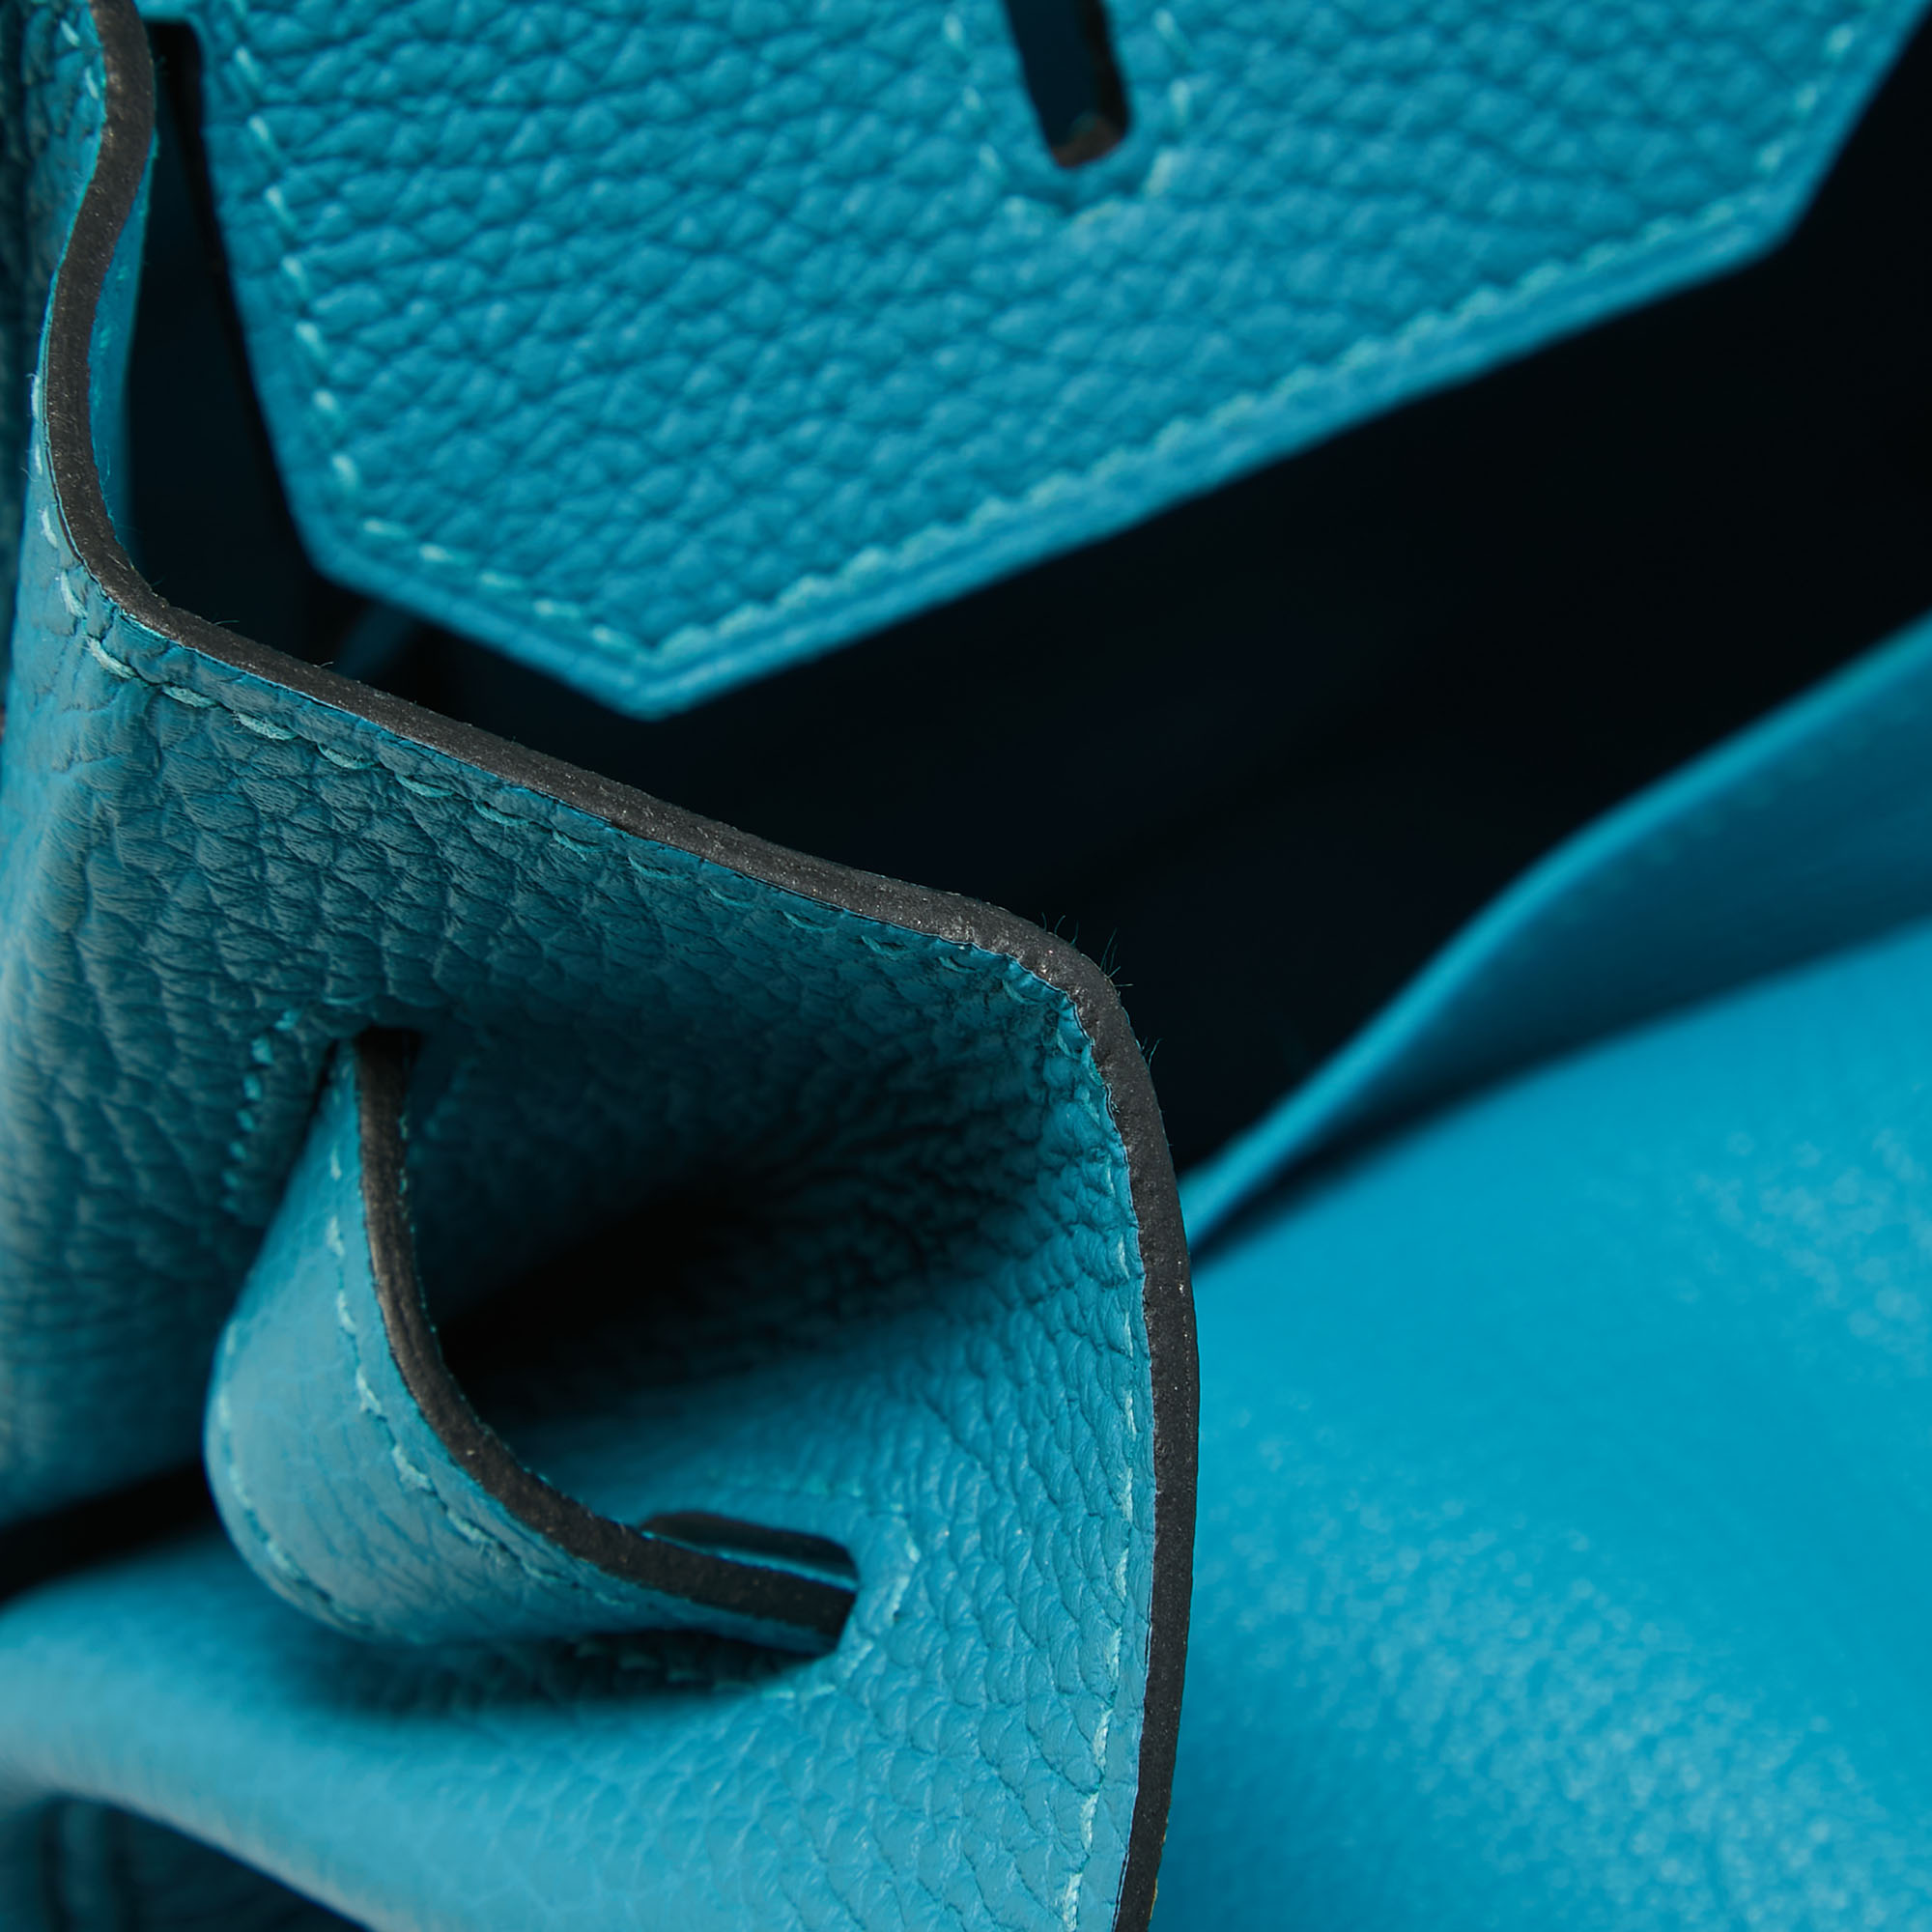 Hermes Turquoise Blue Togo Leather Palladium Finish Birkin 35 Bag